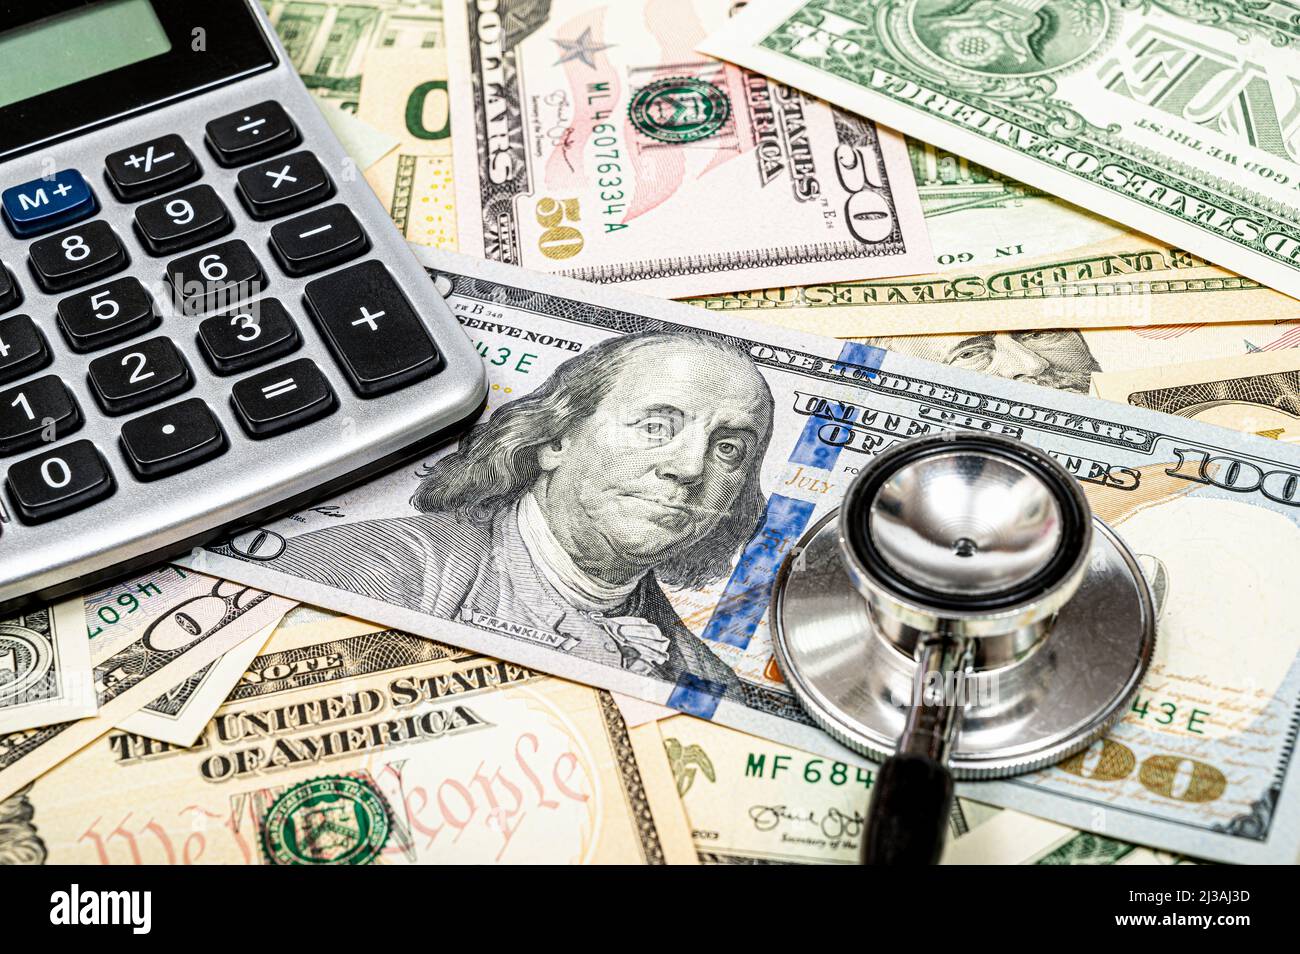 Concept de frais médicaux avec devise américaine, calculatrice et stéthoscope Banque D'Images